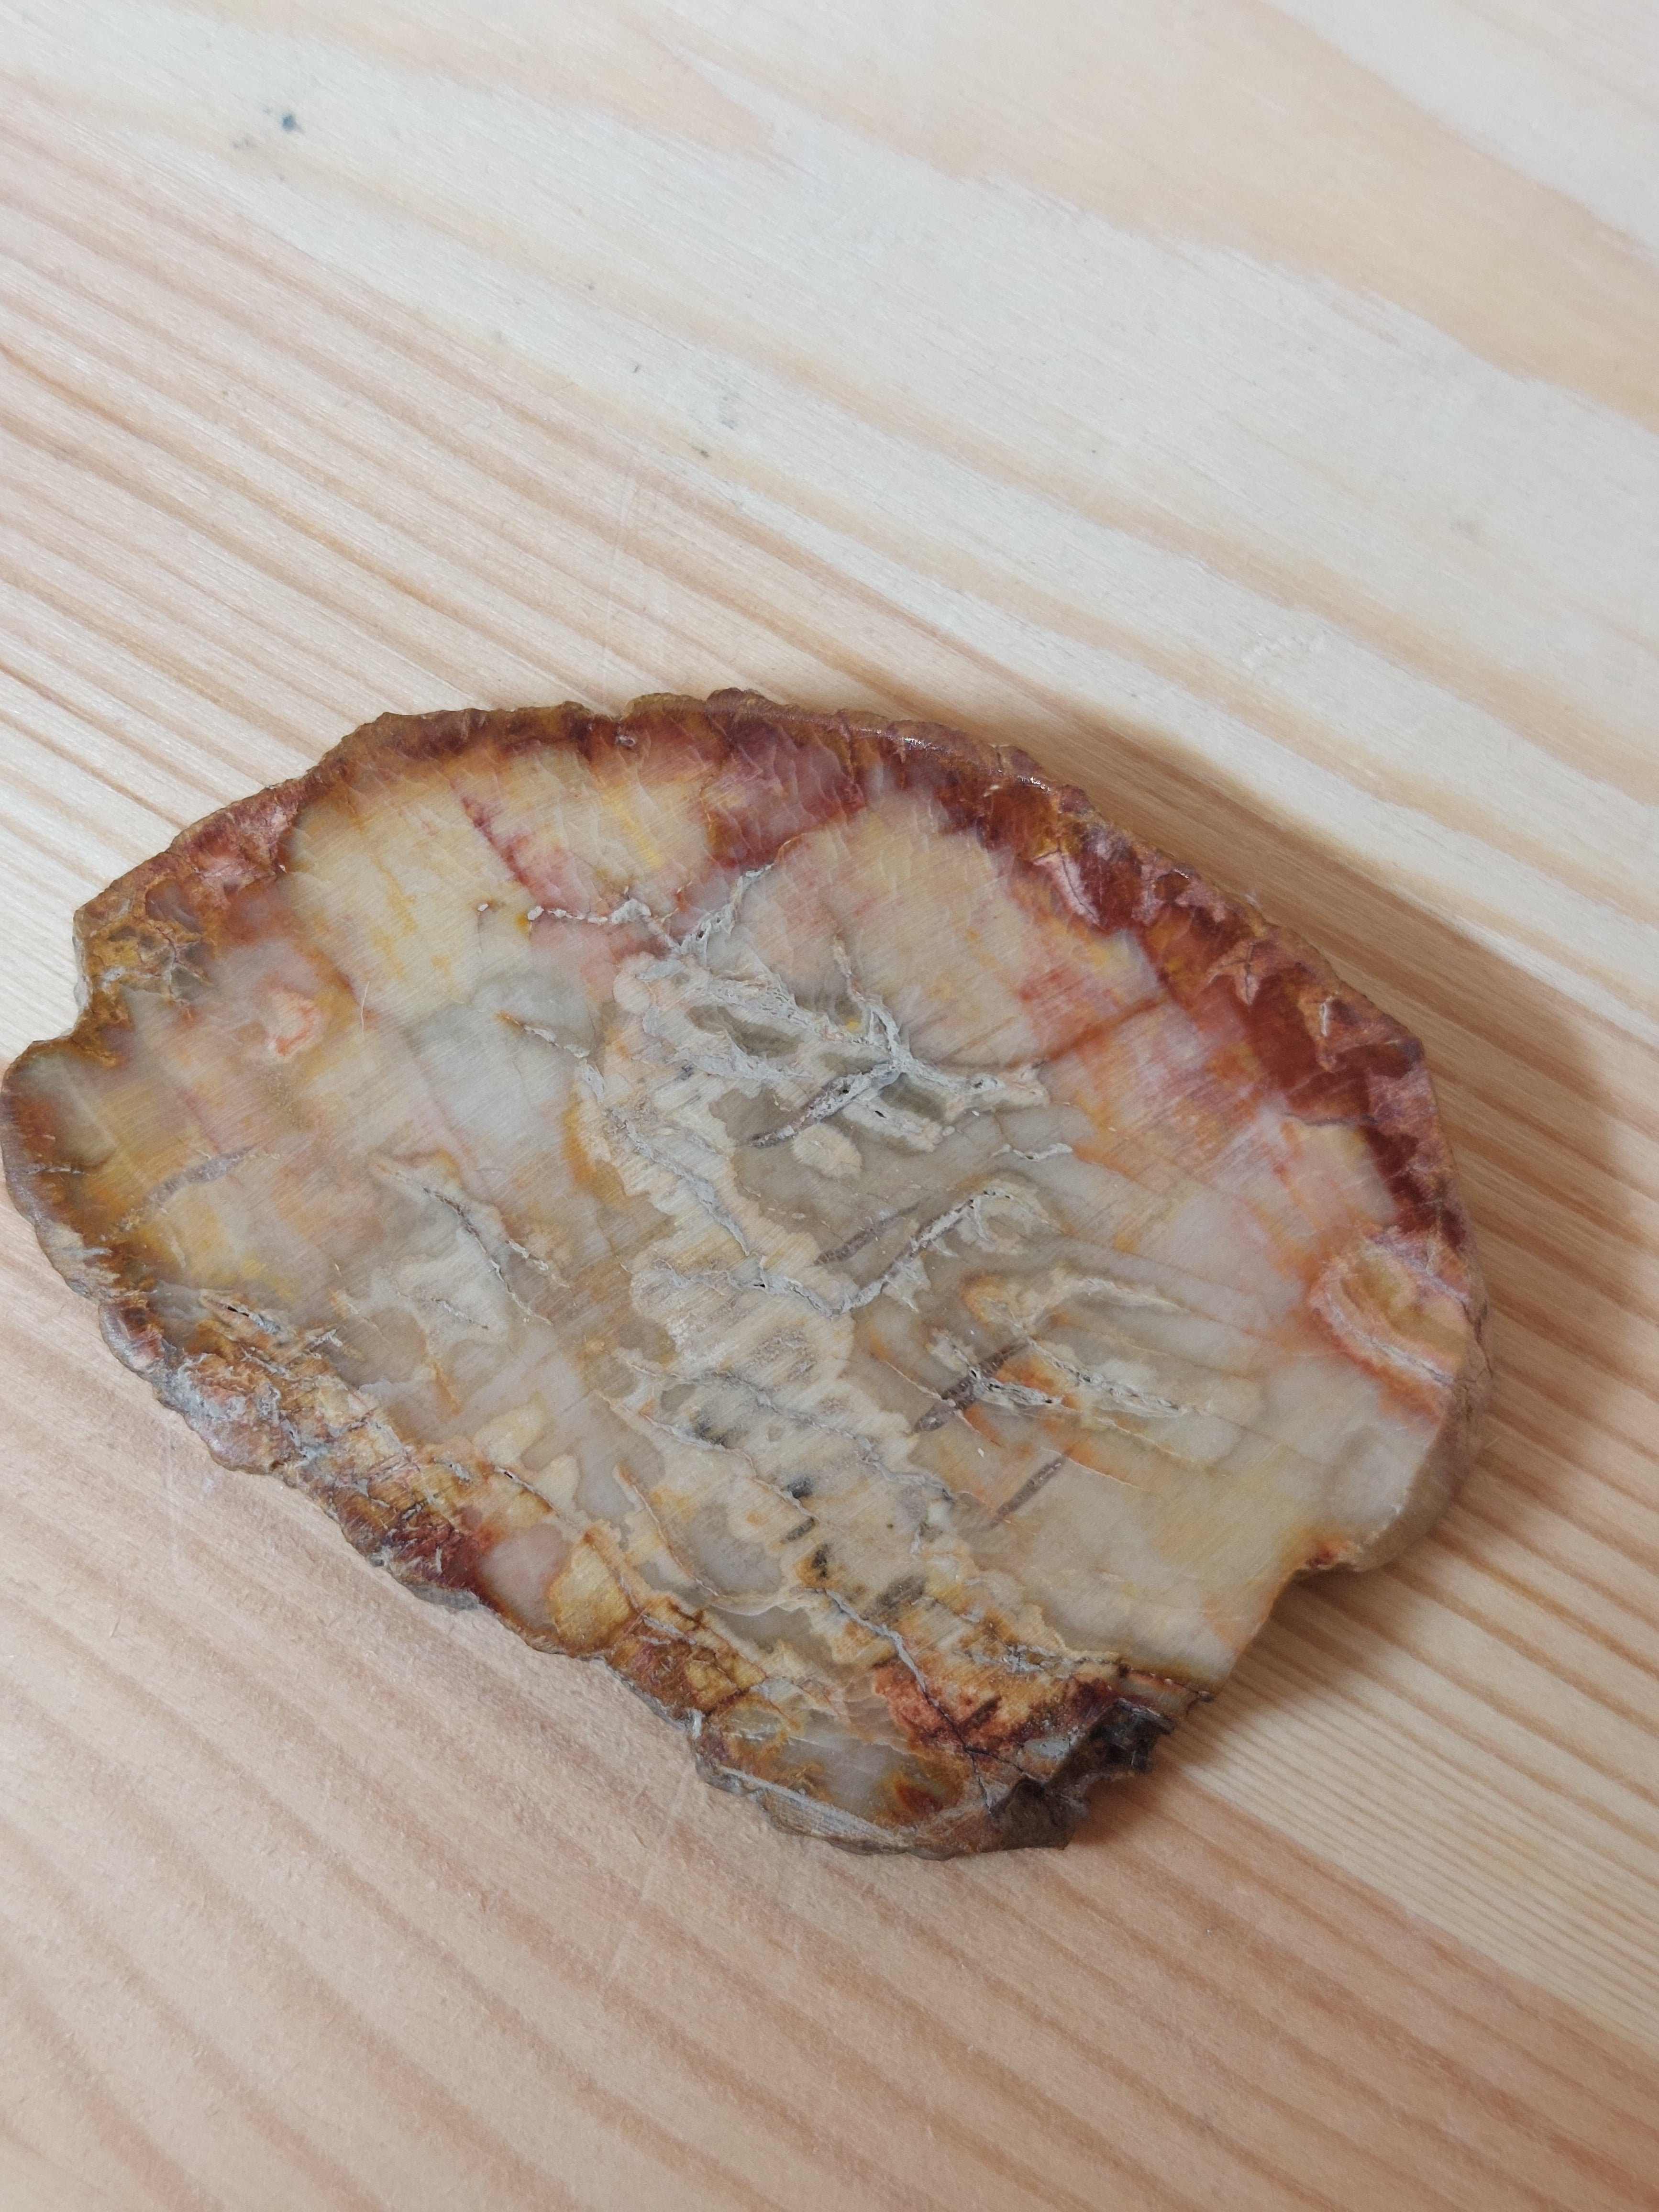 Fossil Wood Slice